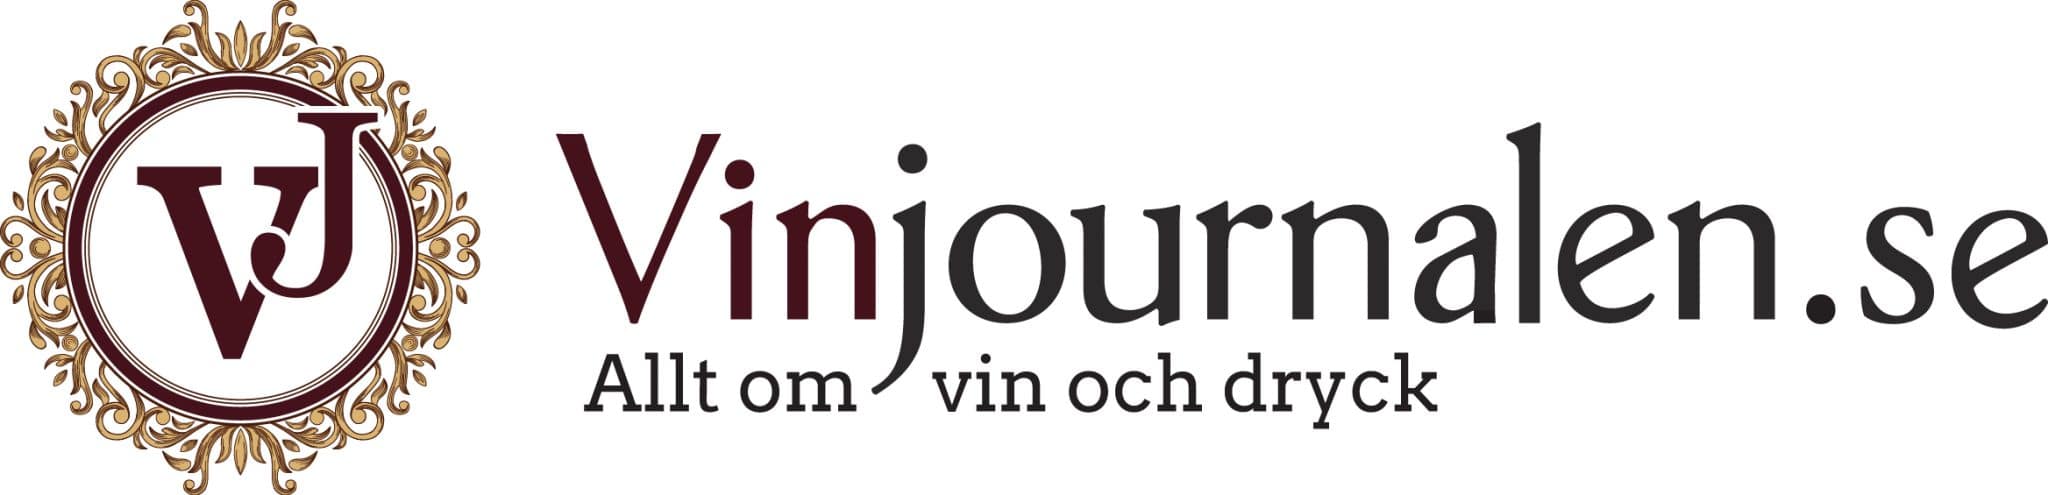 Vinjournalen.se - Allt om vin och dryck